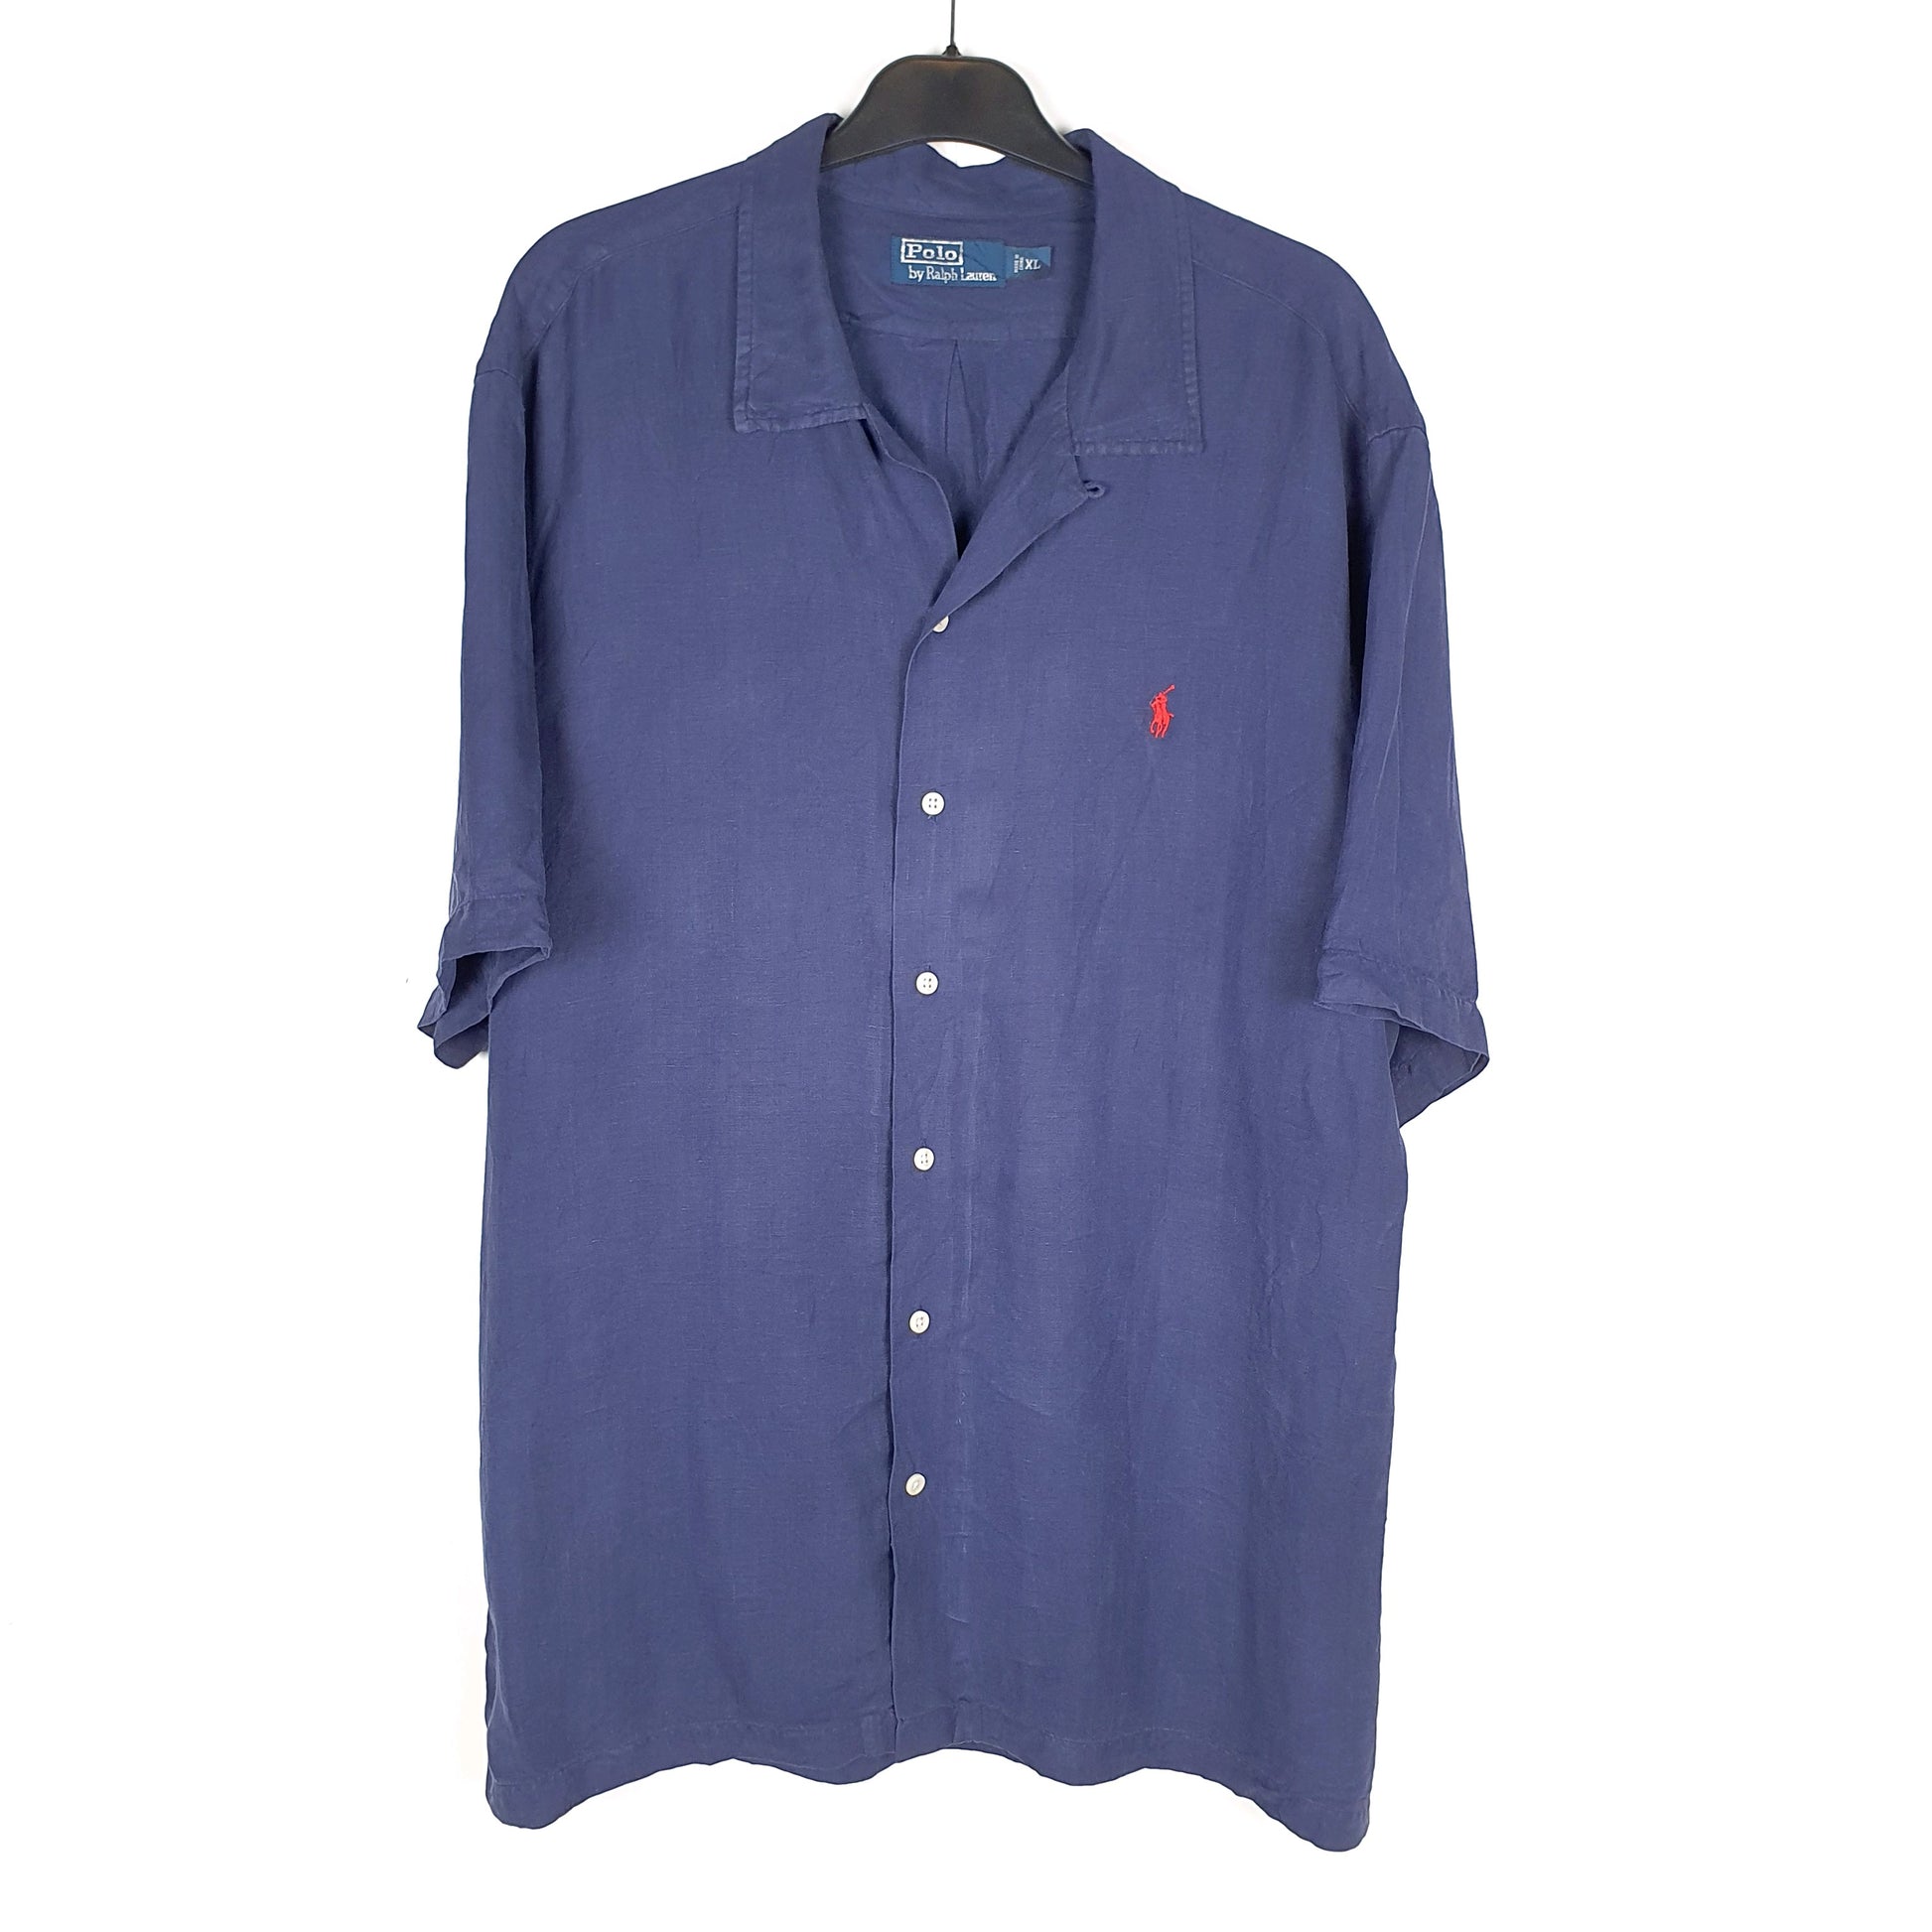 Navy Polo Ralph Lauren Short Sleeve Shirt